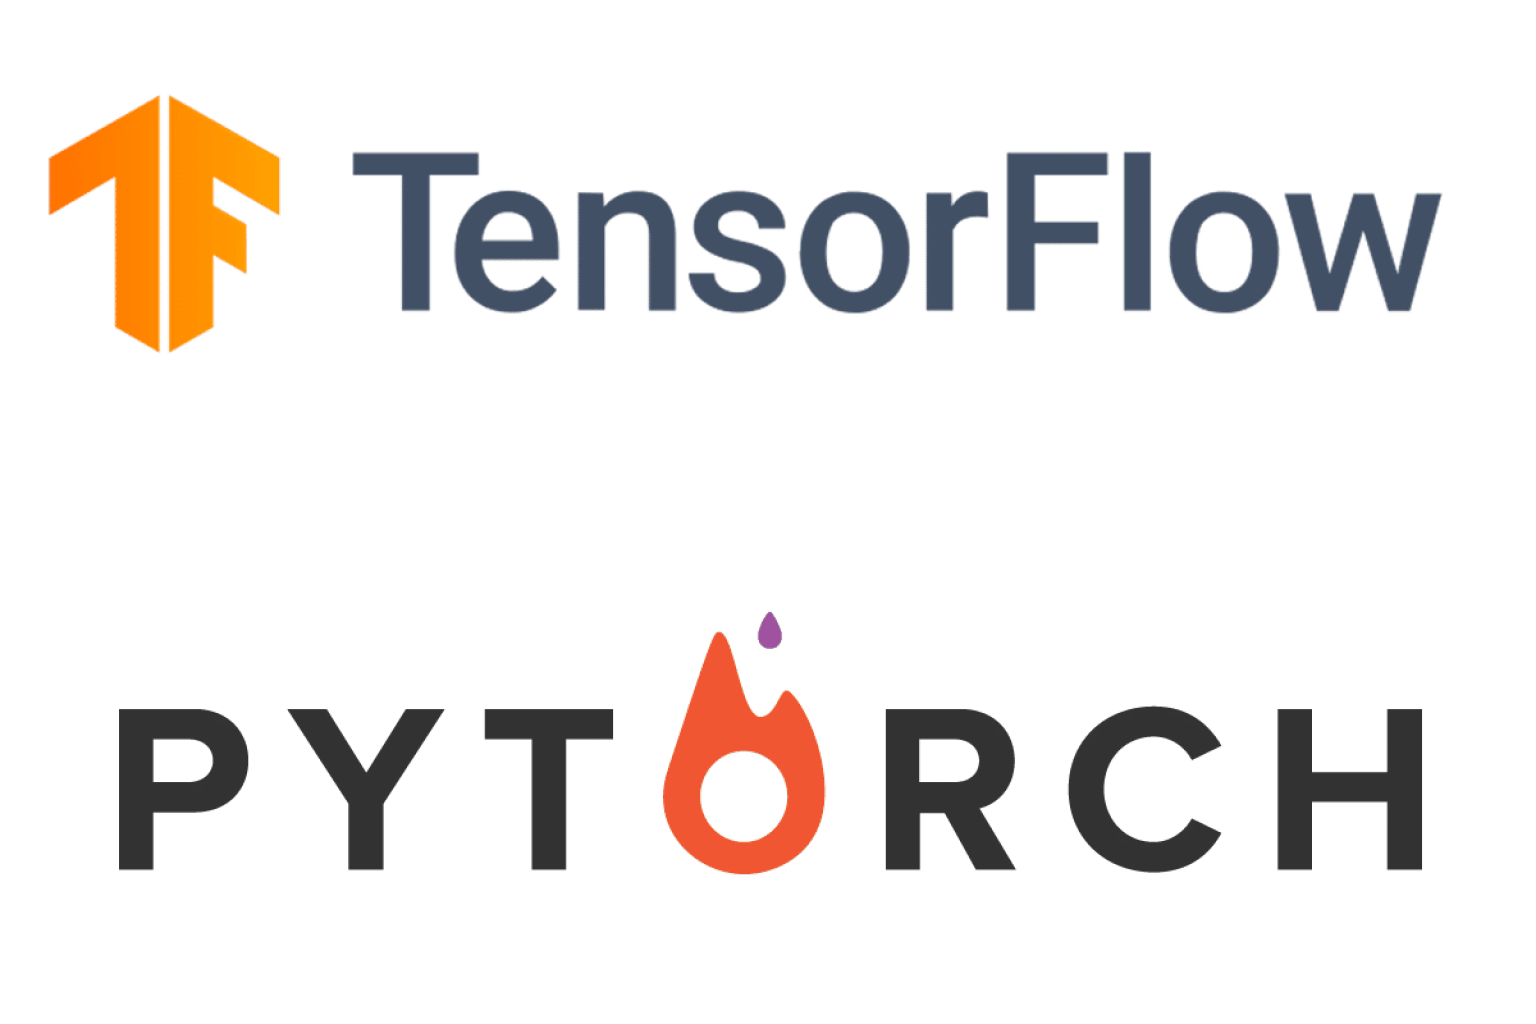 PyTorch e TensorFlow são dois dos frameworks de deep learning mais populares usados na comunidade de ciência de dados. Com o lançamento recente do PyTorch 2.0, muitos estão se perguntando se ele pode competir com a dominação do TensorFlow. Neste post, iremos comparar o PyTorch 2.0 e o TensorFlow para ver se o PyTorch 2.0 é o game changer que todos estão falando.